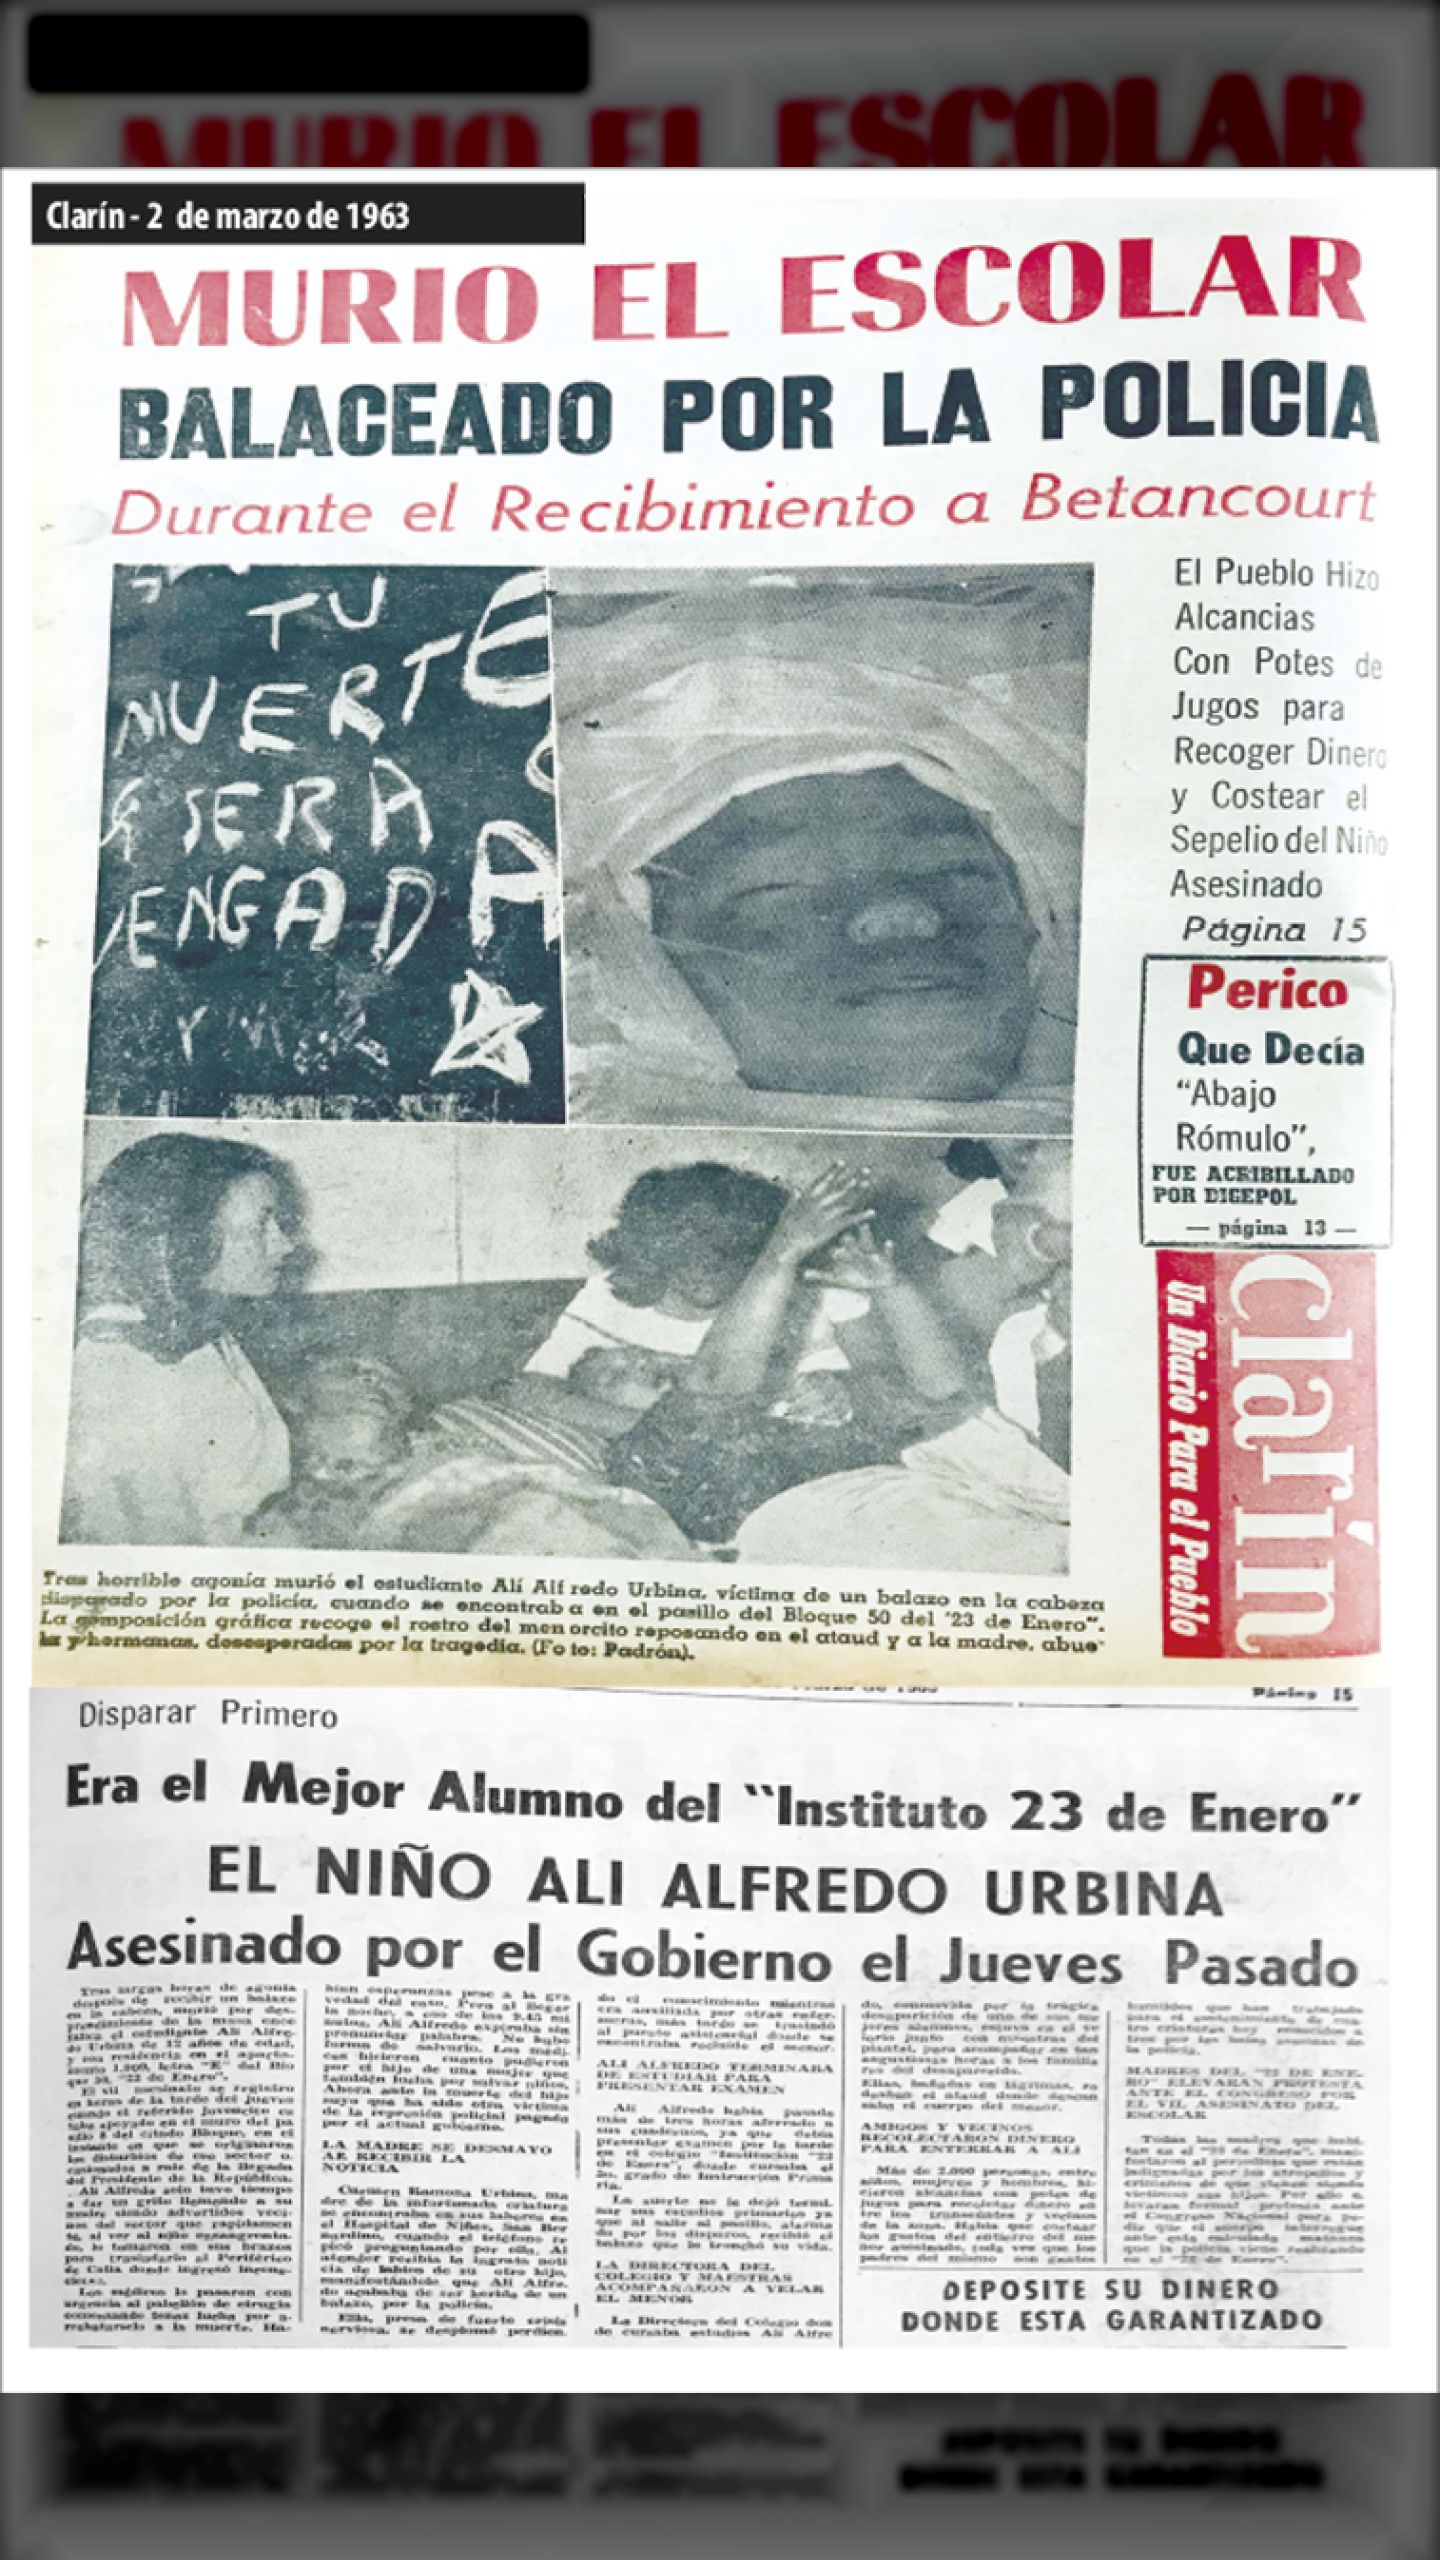 MURIÓ ESCOLAR BALACEADO POR LA POLICIA DURANTE EL RECIBIMIENTO A RÓMULO BETANCOURT (Clarín, 2 de marzo 1963)